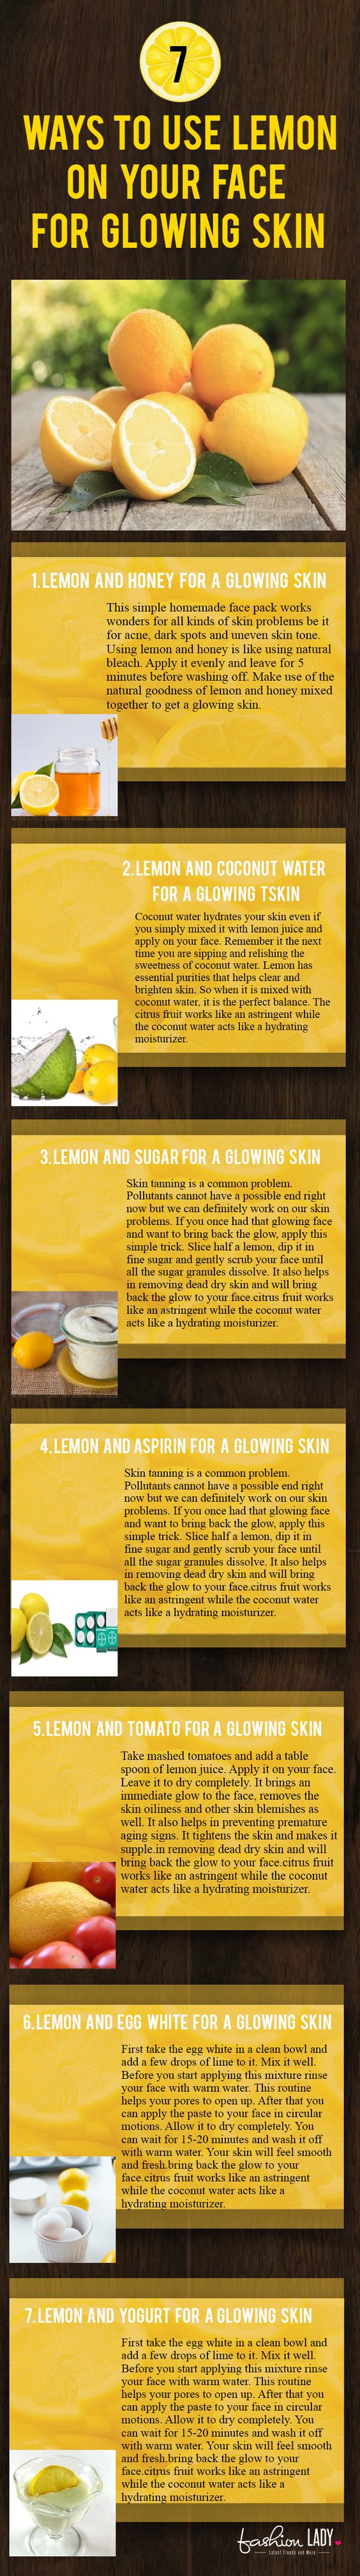 Top 7 Möglichkeiten, Zitrone im Gesicht für Glowing Skin zu verwenden 